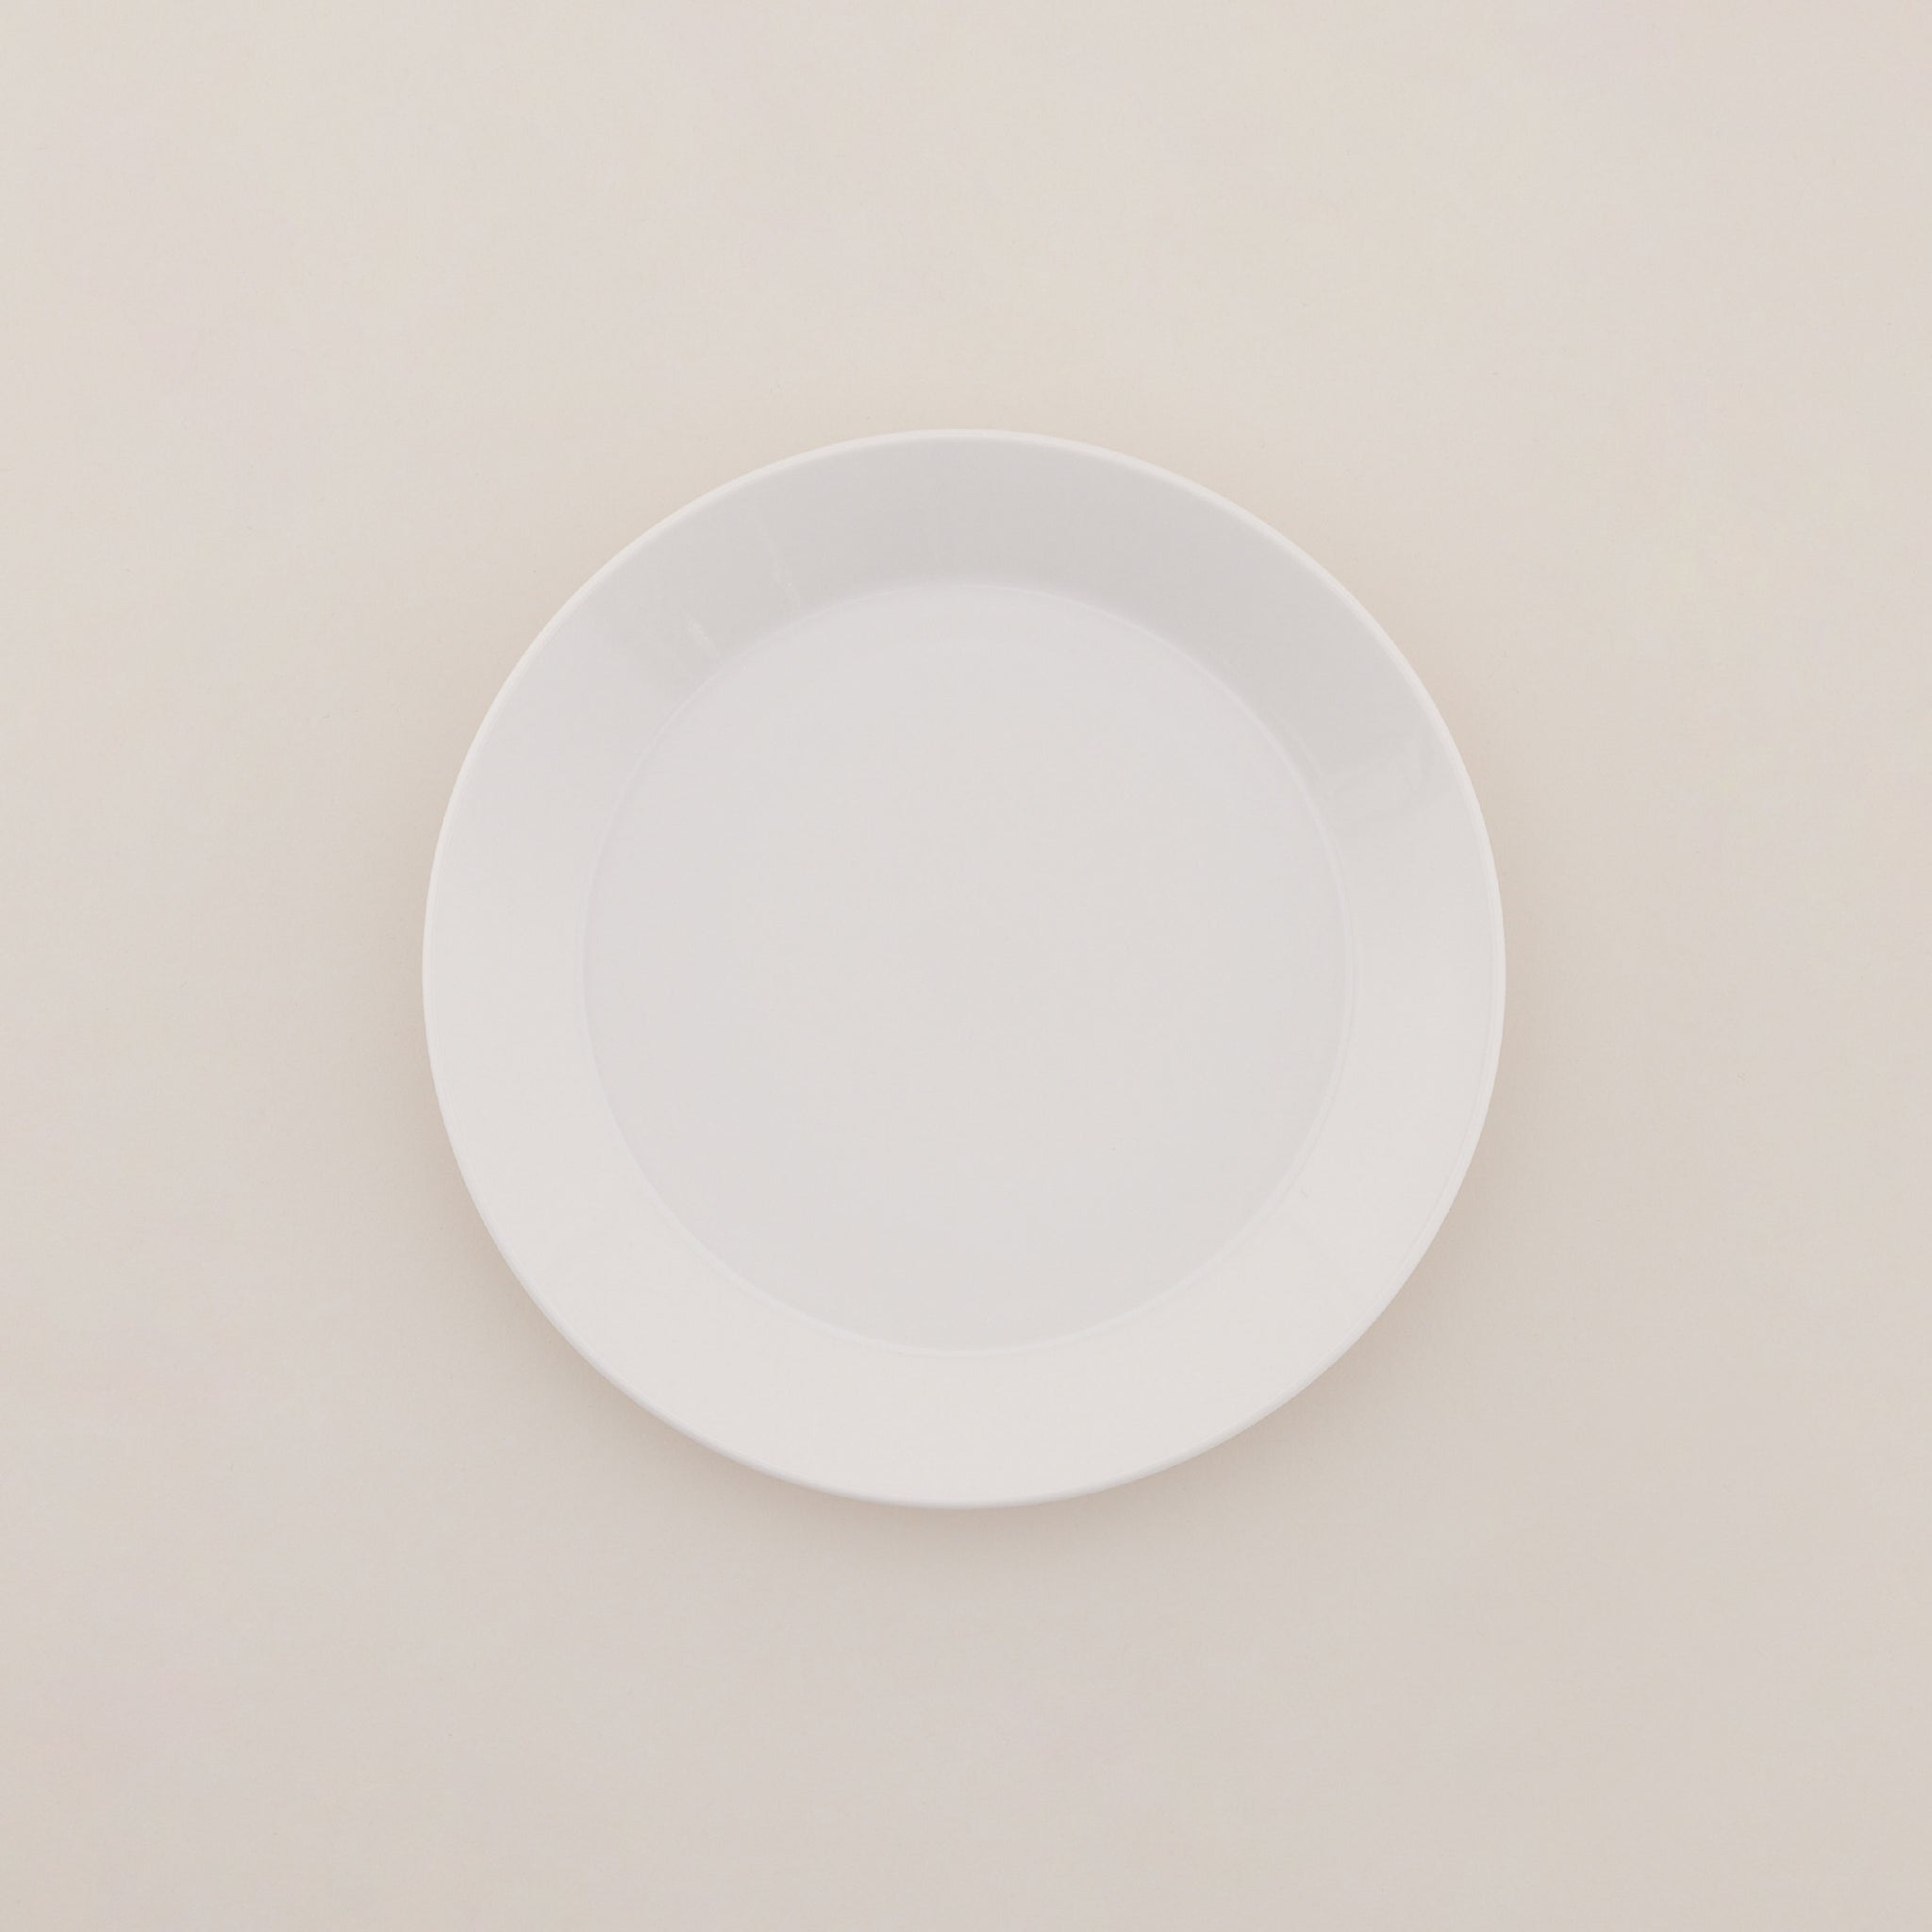 Bowlbowl Ceramic Urban Plate | จานเซรามิก